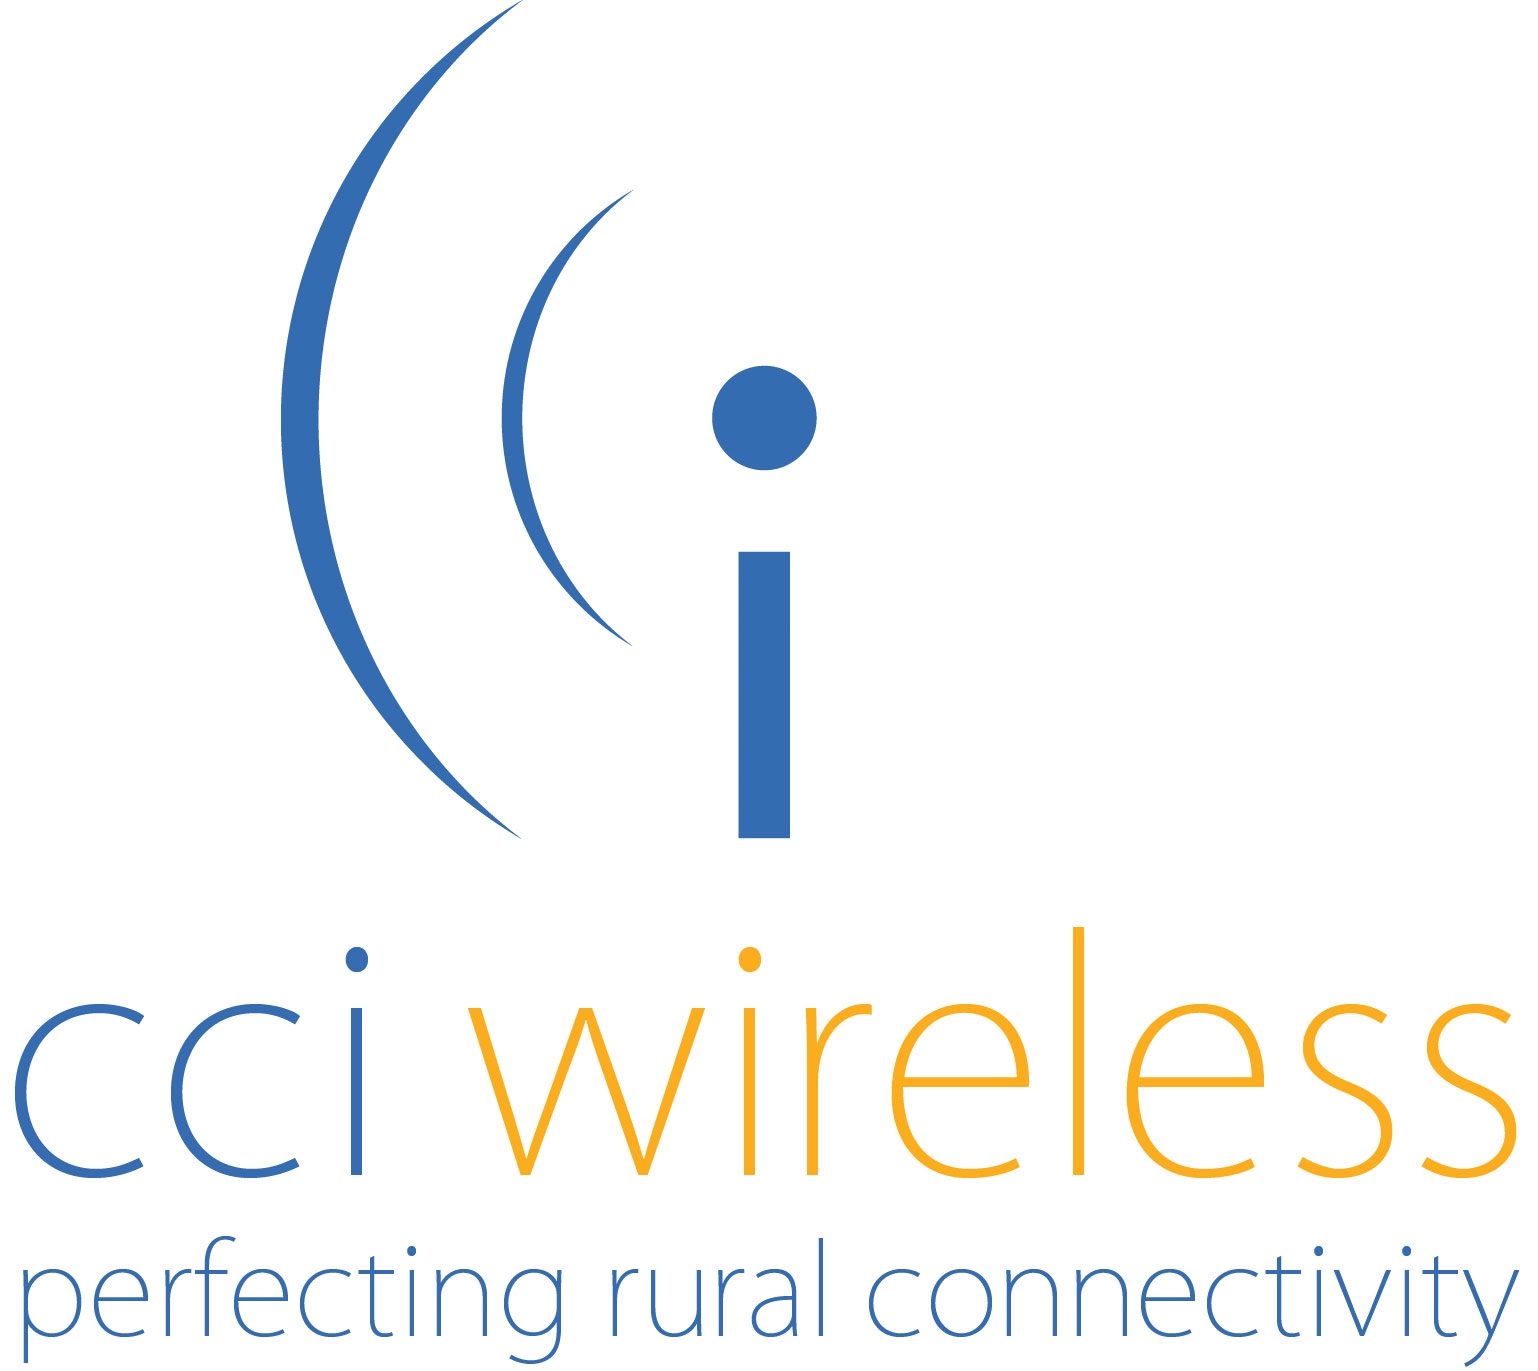 CCI Wireless announc